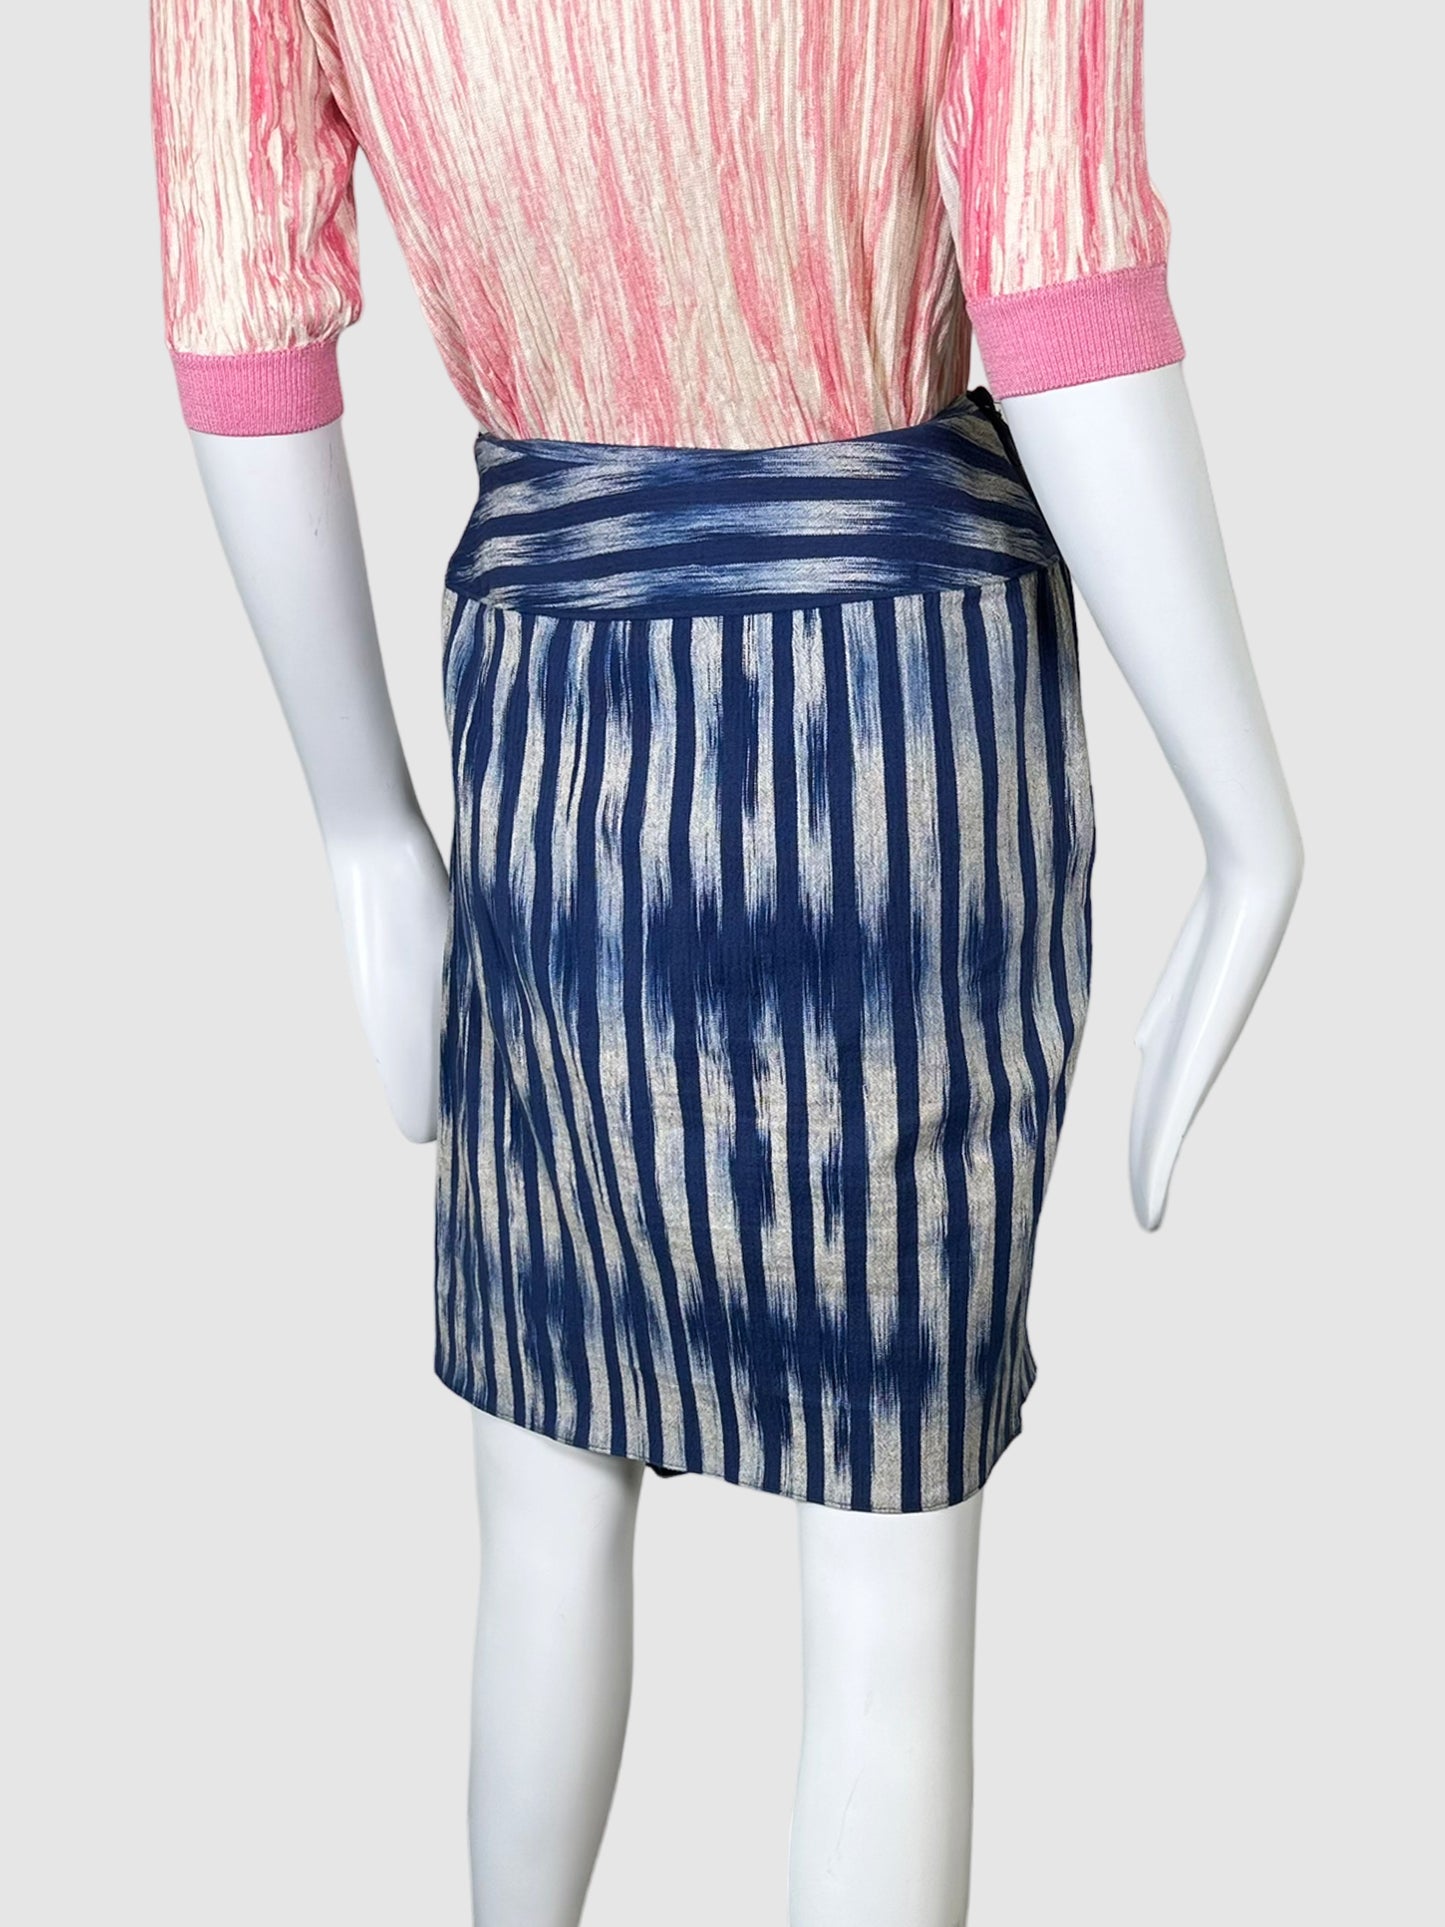 Issey Miyake Printed Mini Skirt - Size 6